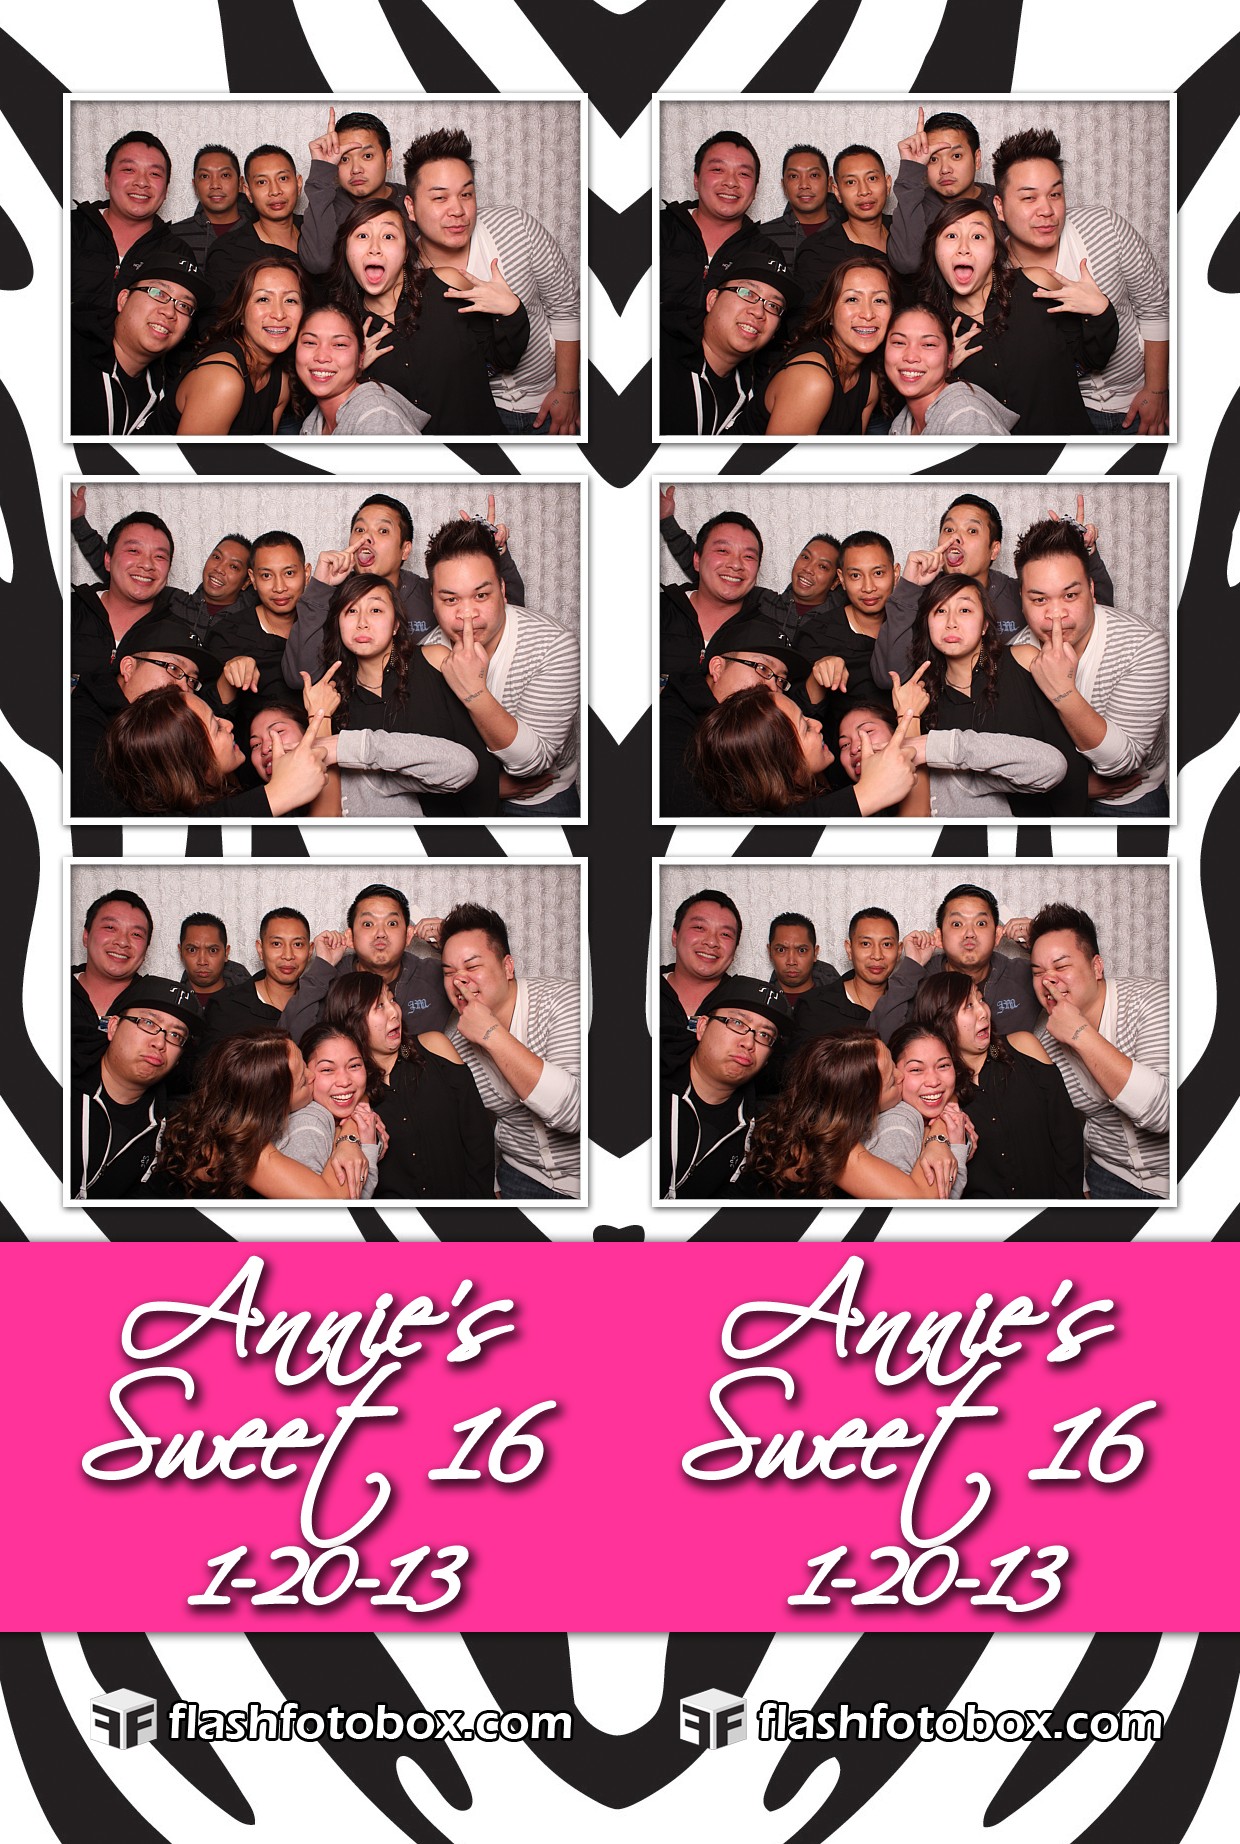 Annie’s Sweeet 16 – January 20, 2013